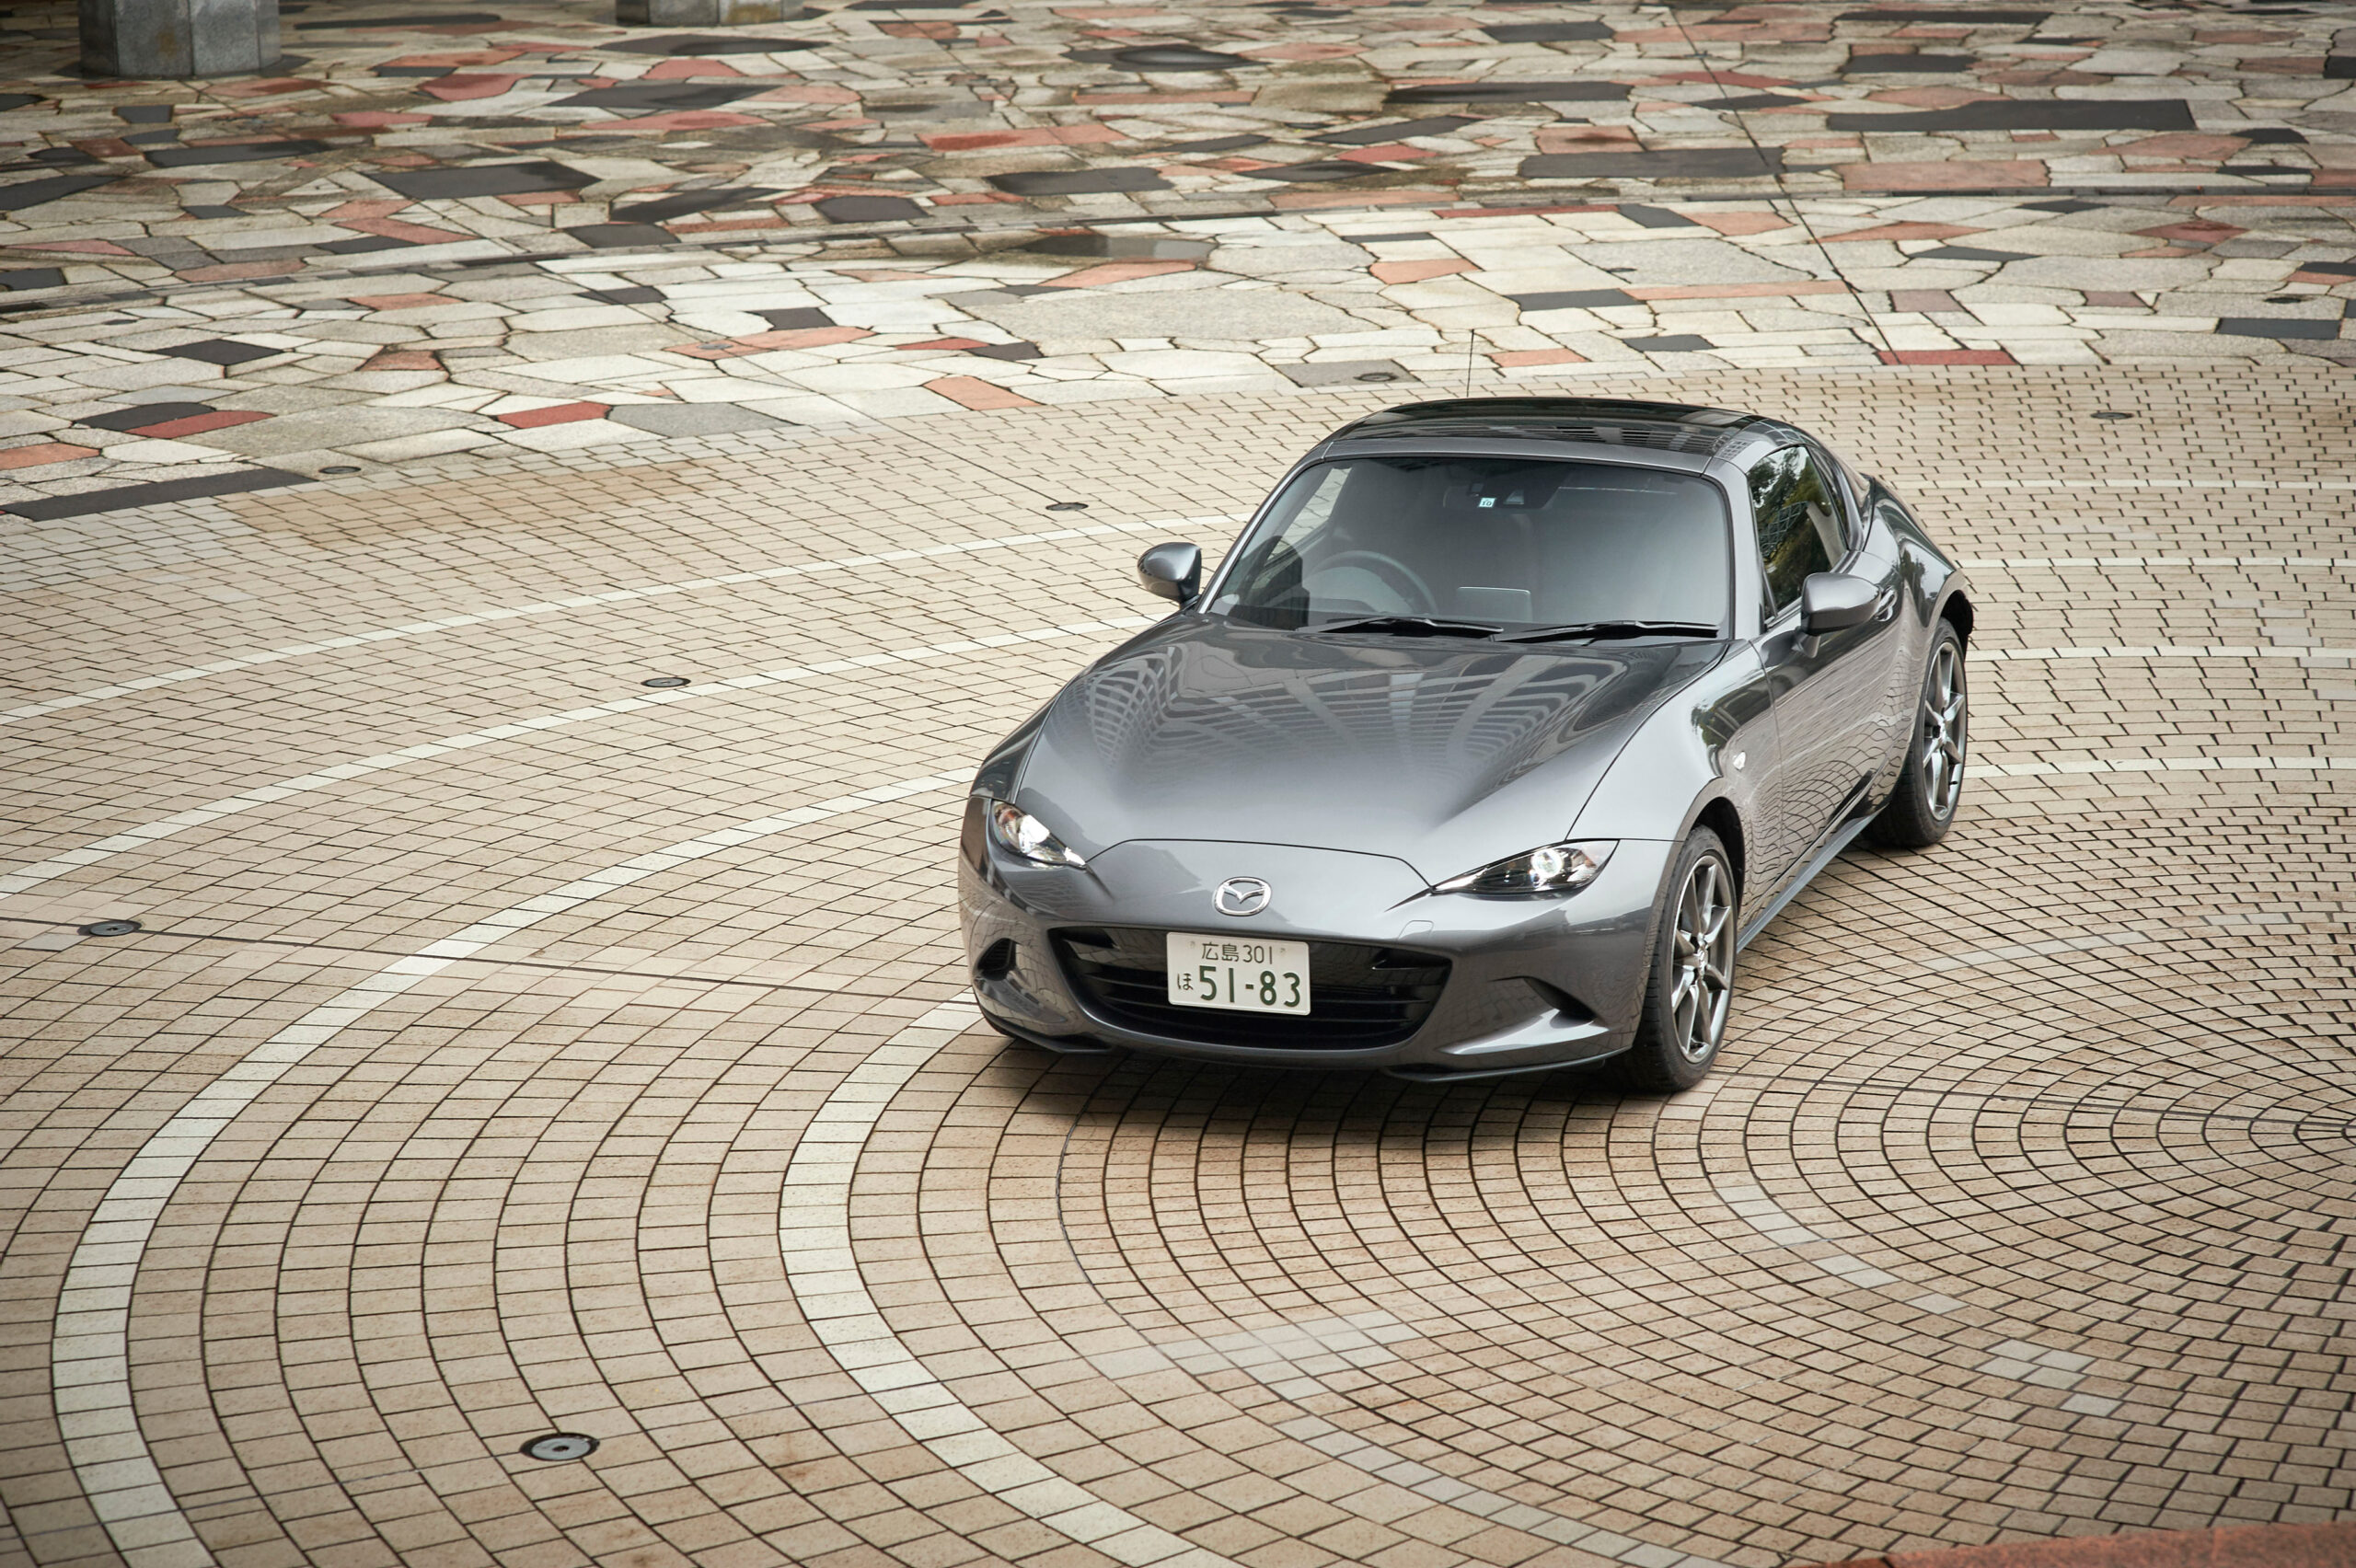 Mazda nabízí v Japonsku model MX-5 i pro lidi s handicapem